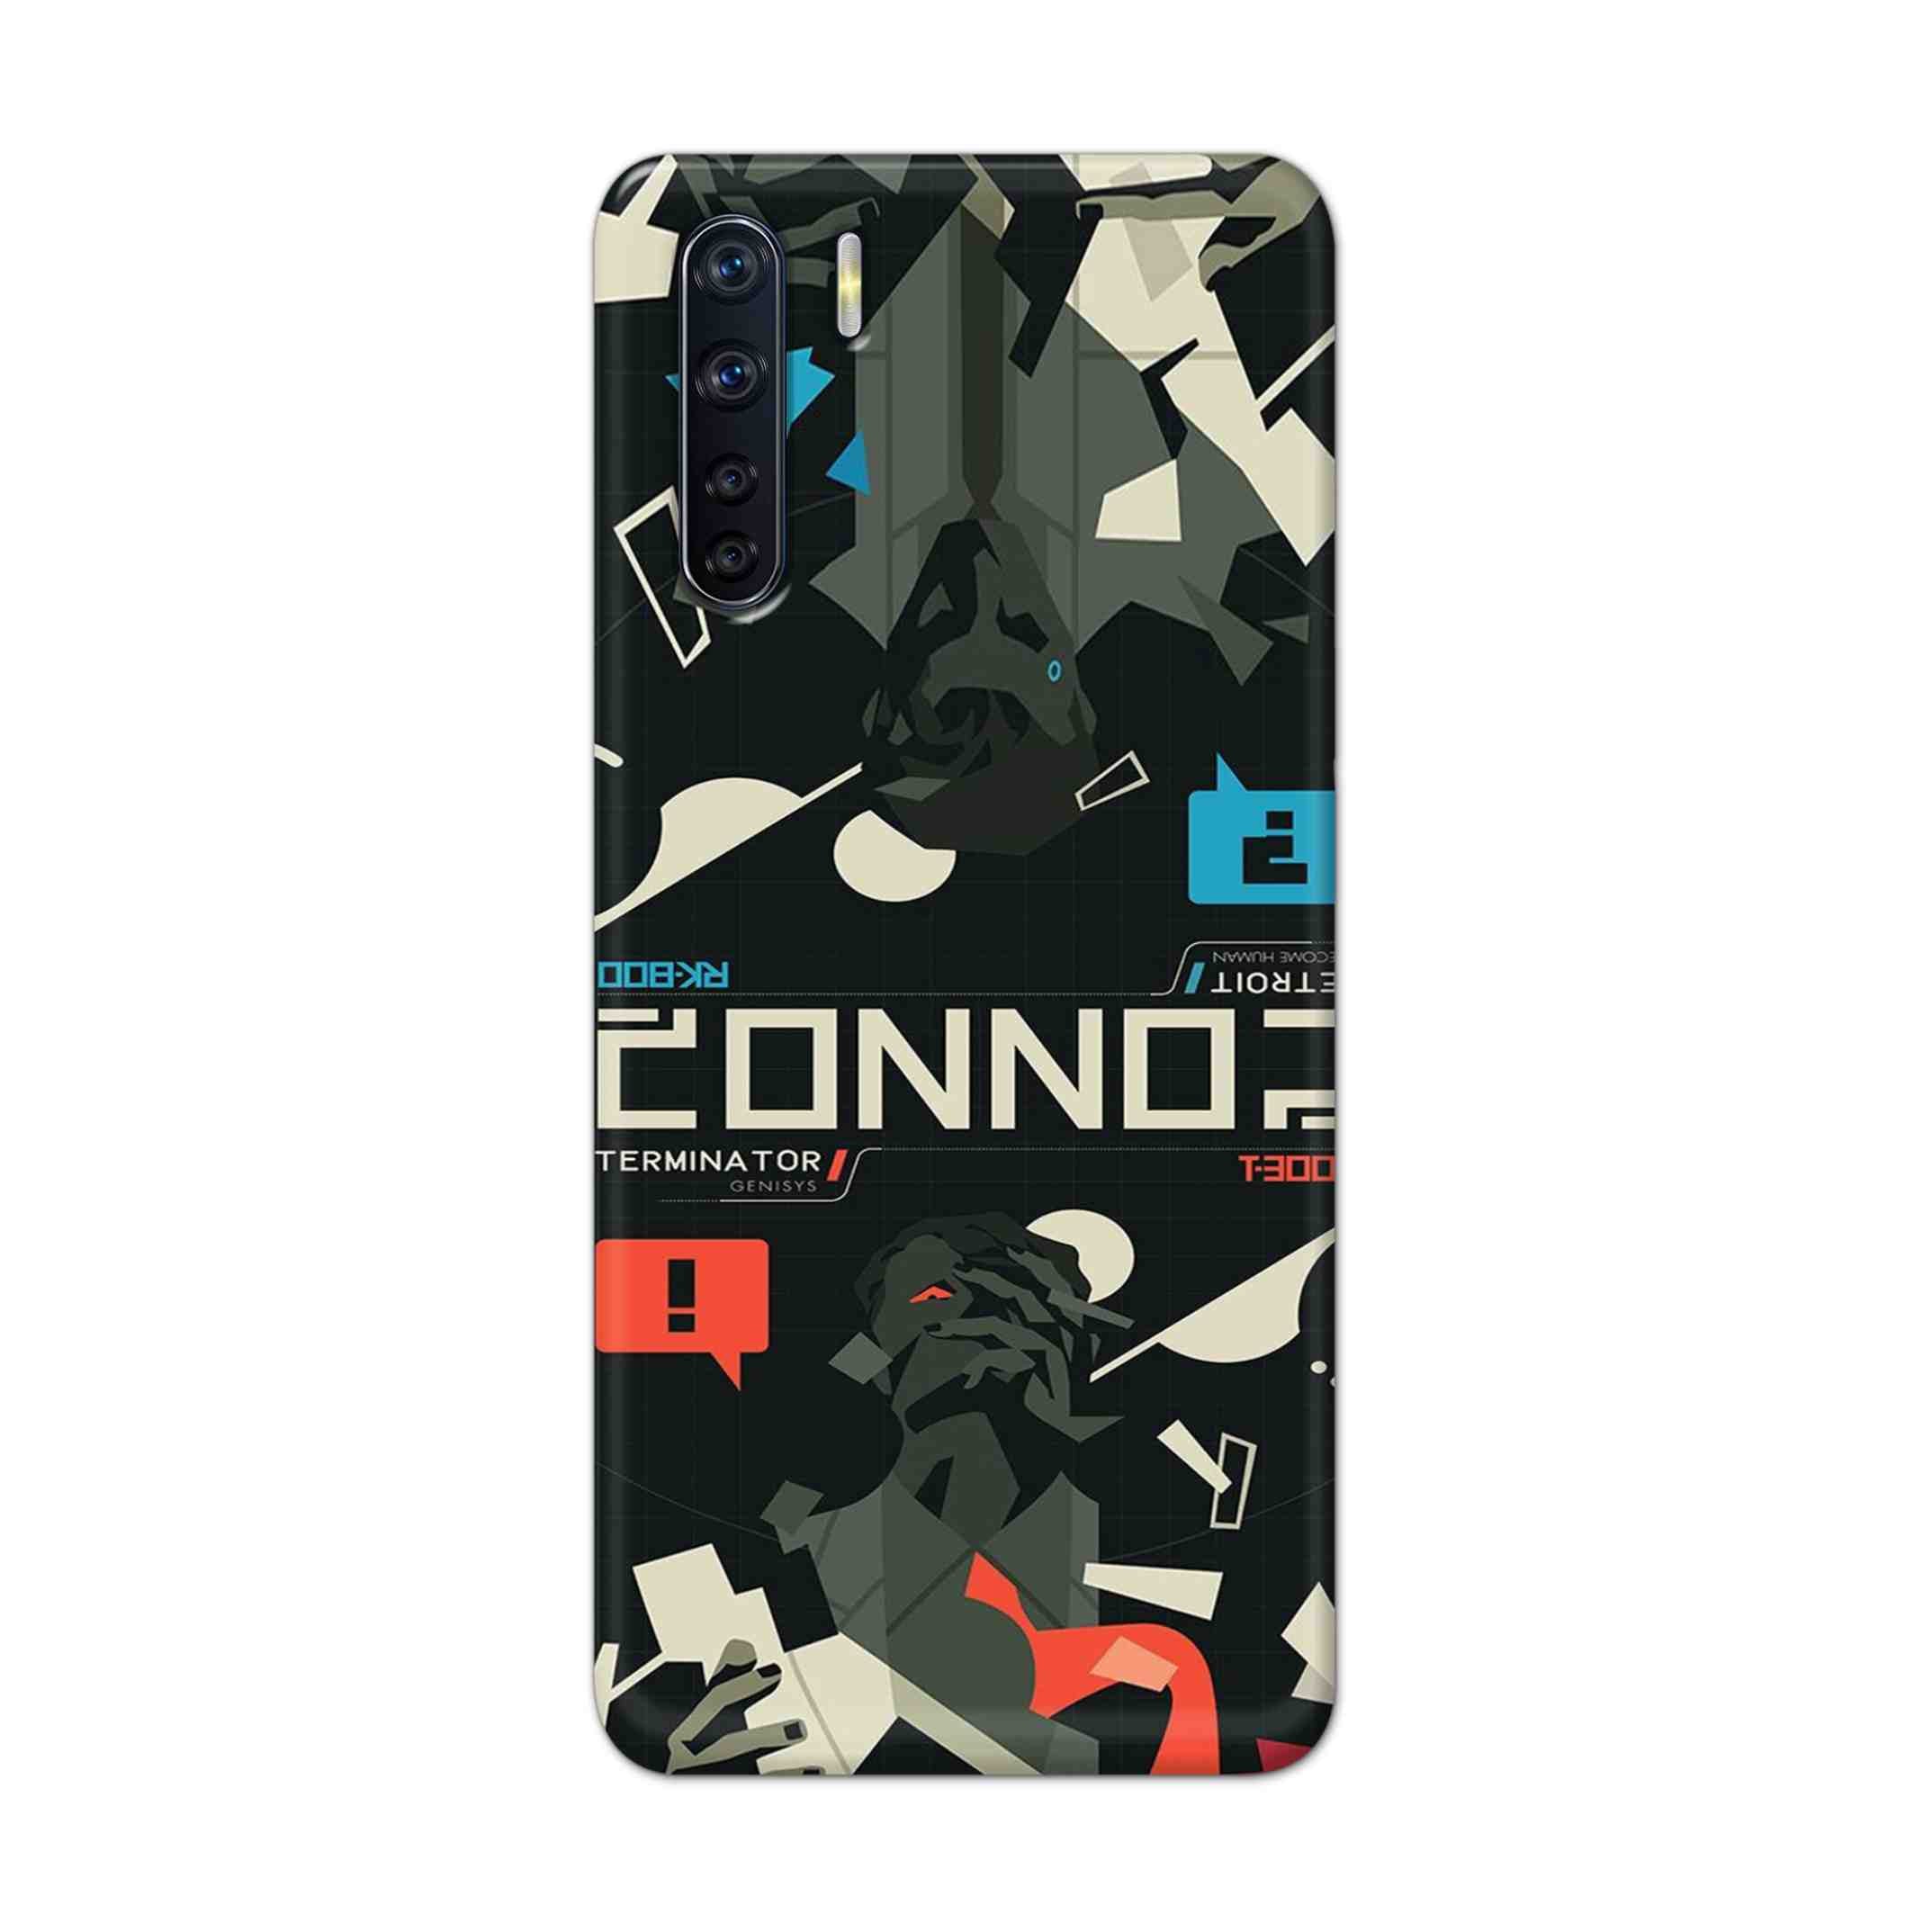 Buy Terminator Hard Back Mobile Phone Case Cover For OPPO F15 Online